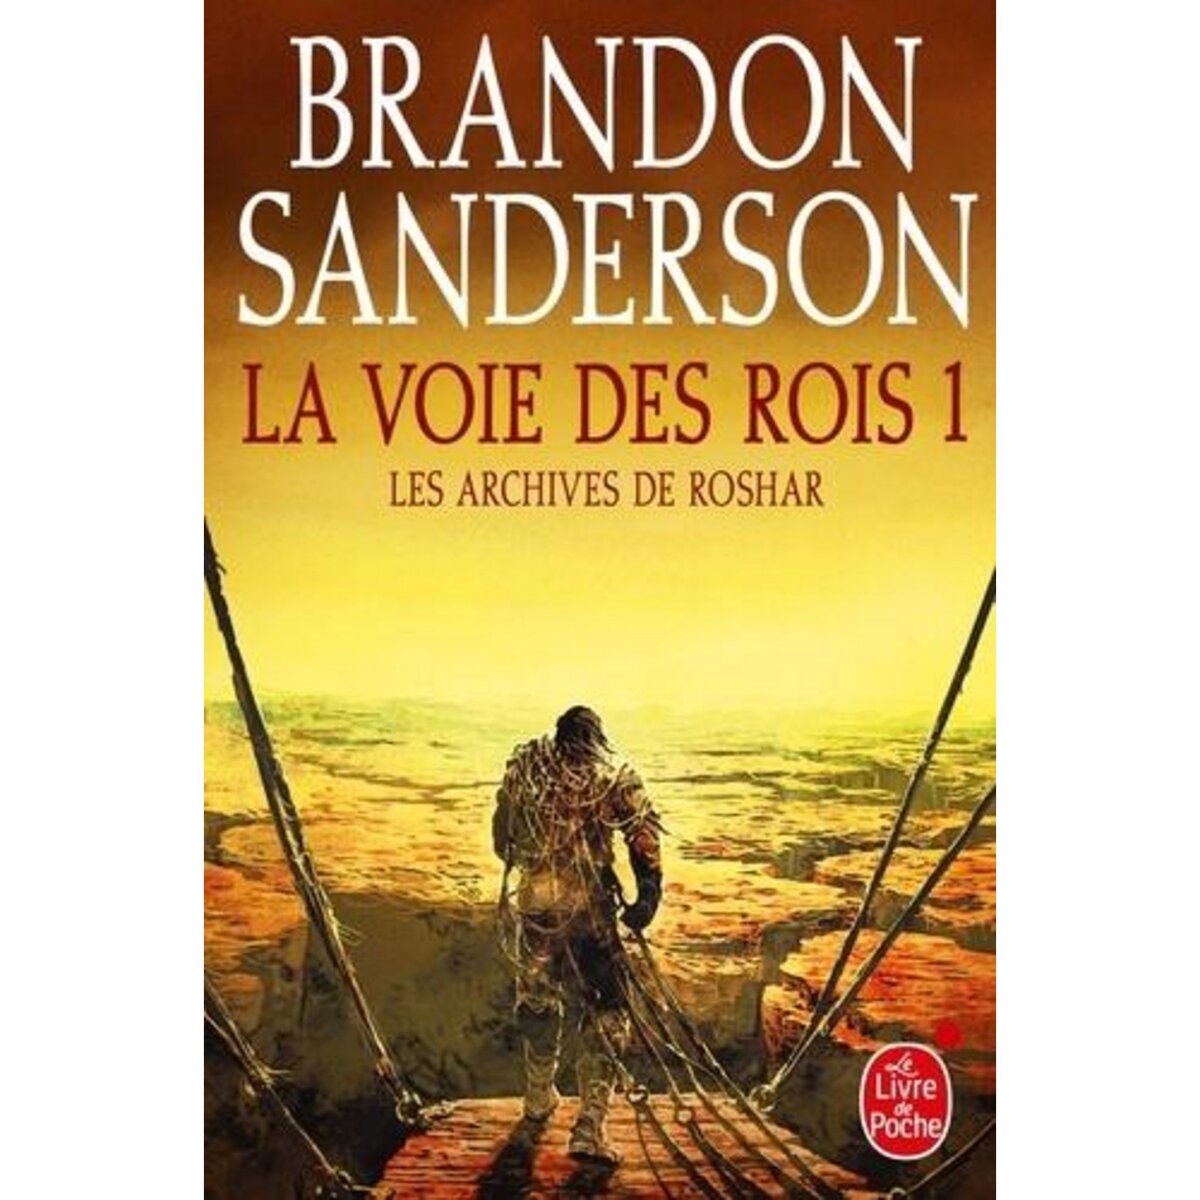  LA VOIE DES ROIS TOME 1, Sanderson Brandon